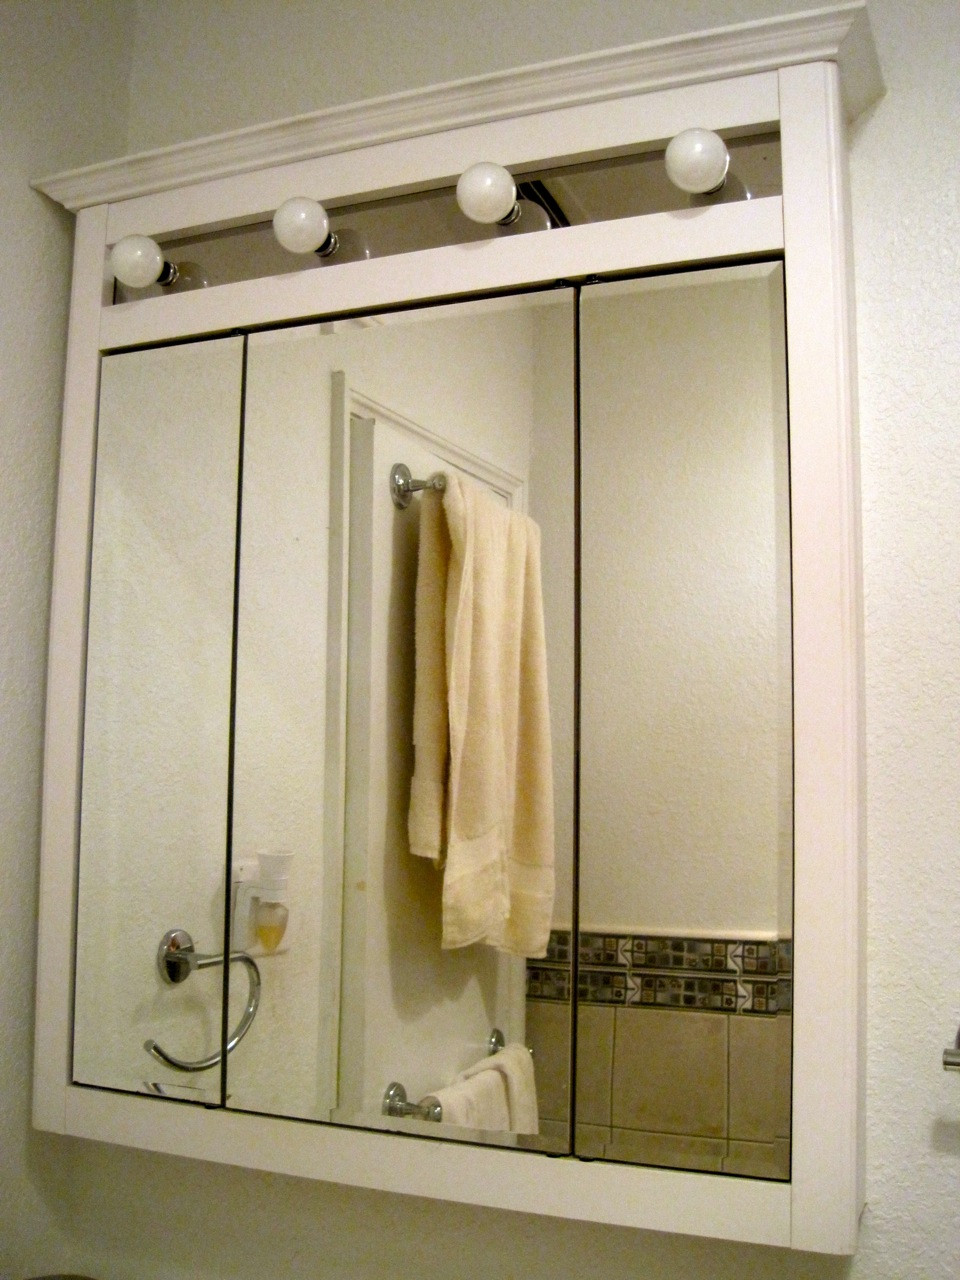 Mirrored Bathroom Medicine Cabinet
 In Wall Medicine Cabinet Ideas – HomesFeed